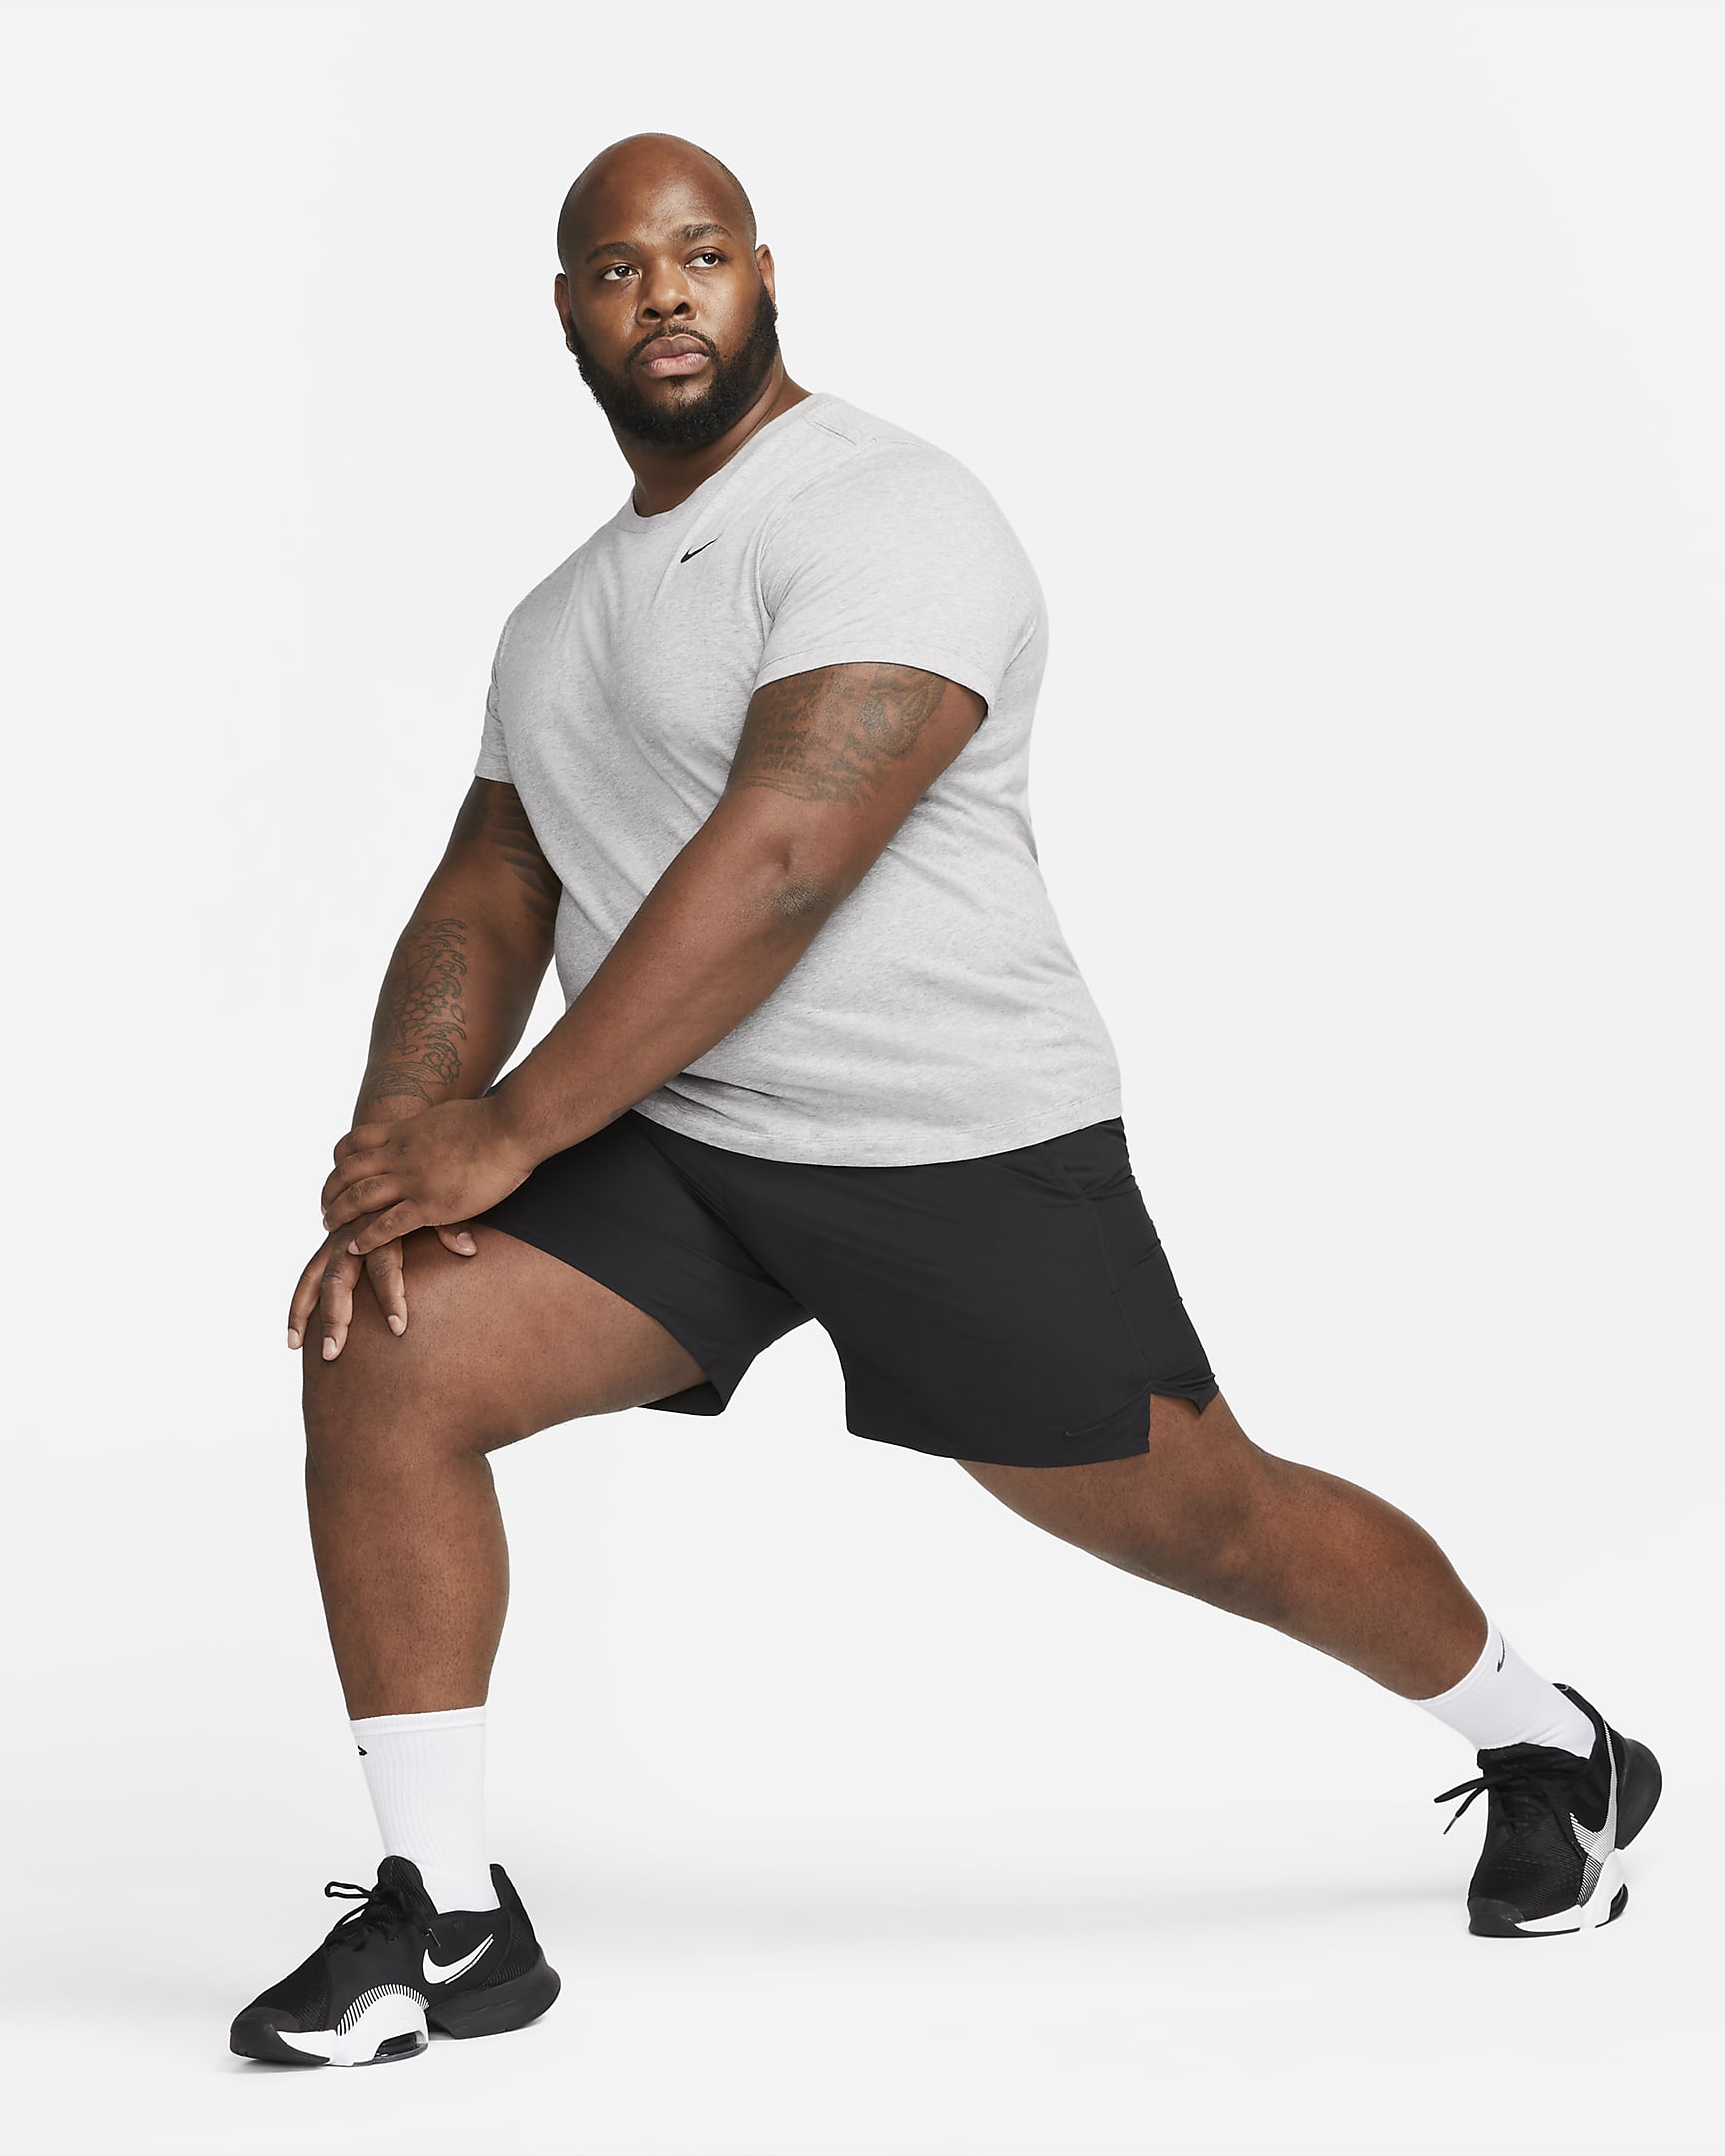 Nike Dri-FIT Men's Fitness T-Shirt - Dark Grey Heather/Black